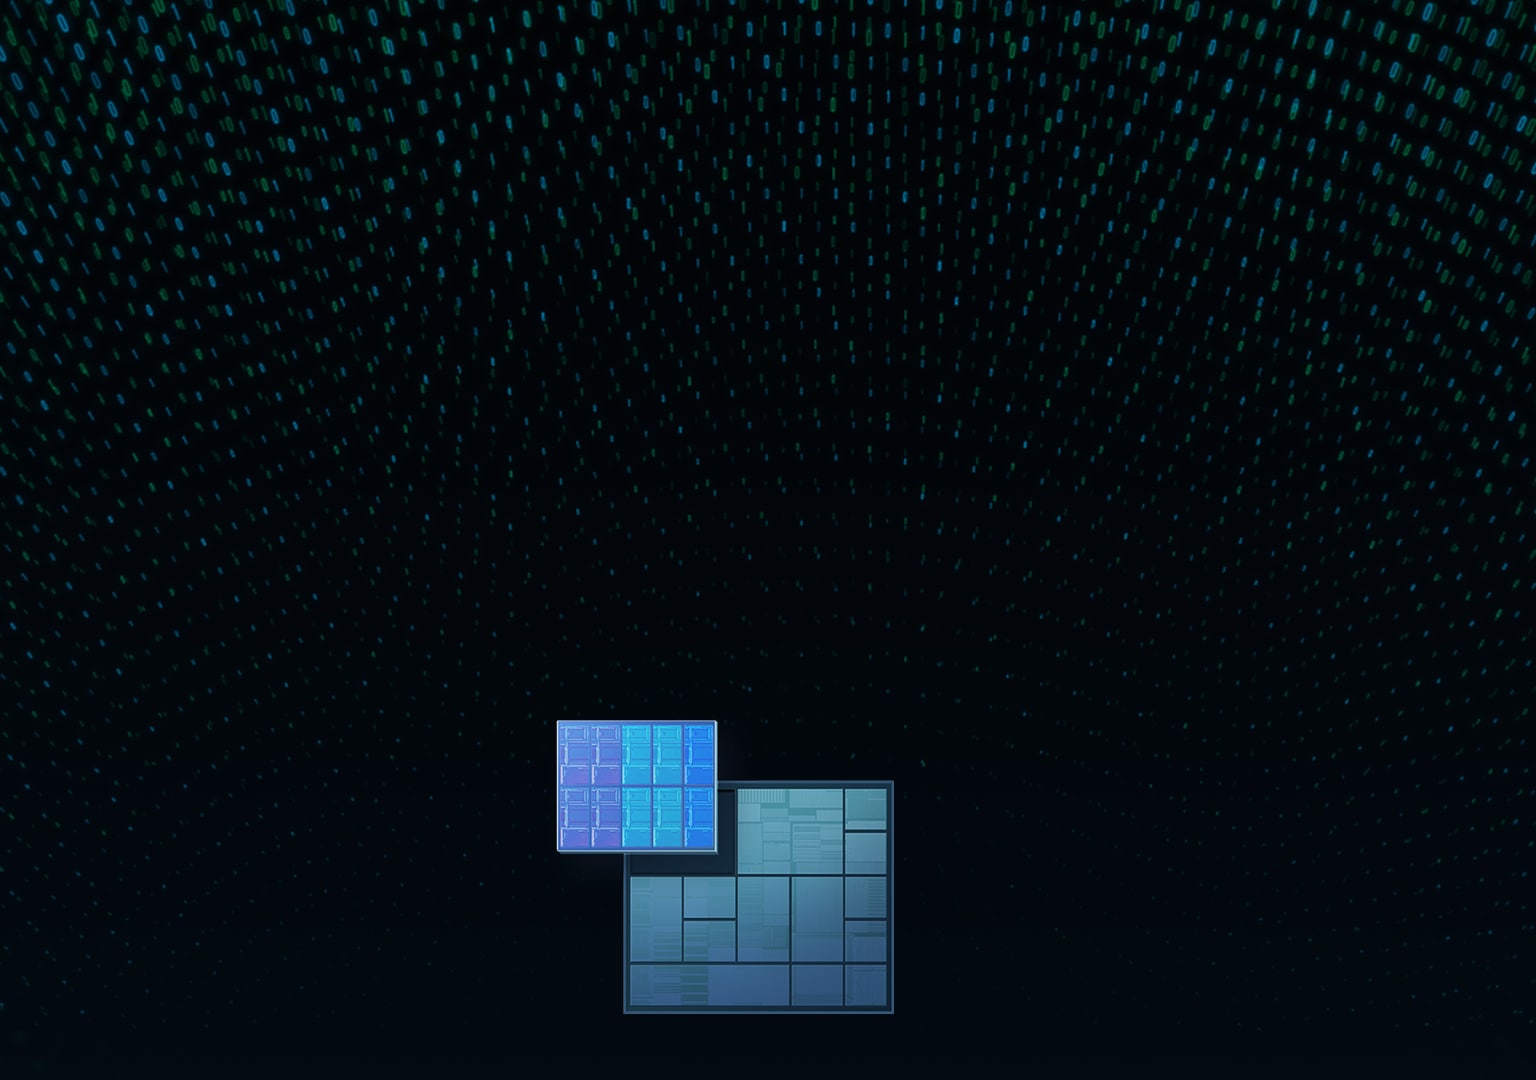 어두운 배경 위에 CPU를 형상화한 큐브 형태 이미지들.